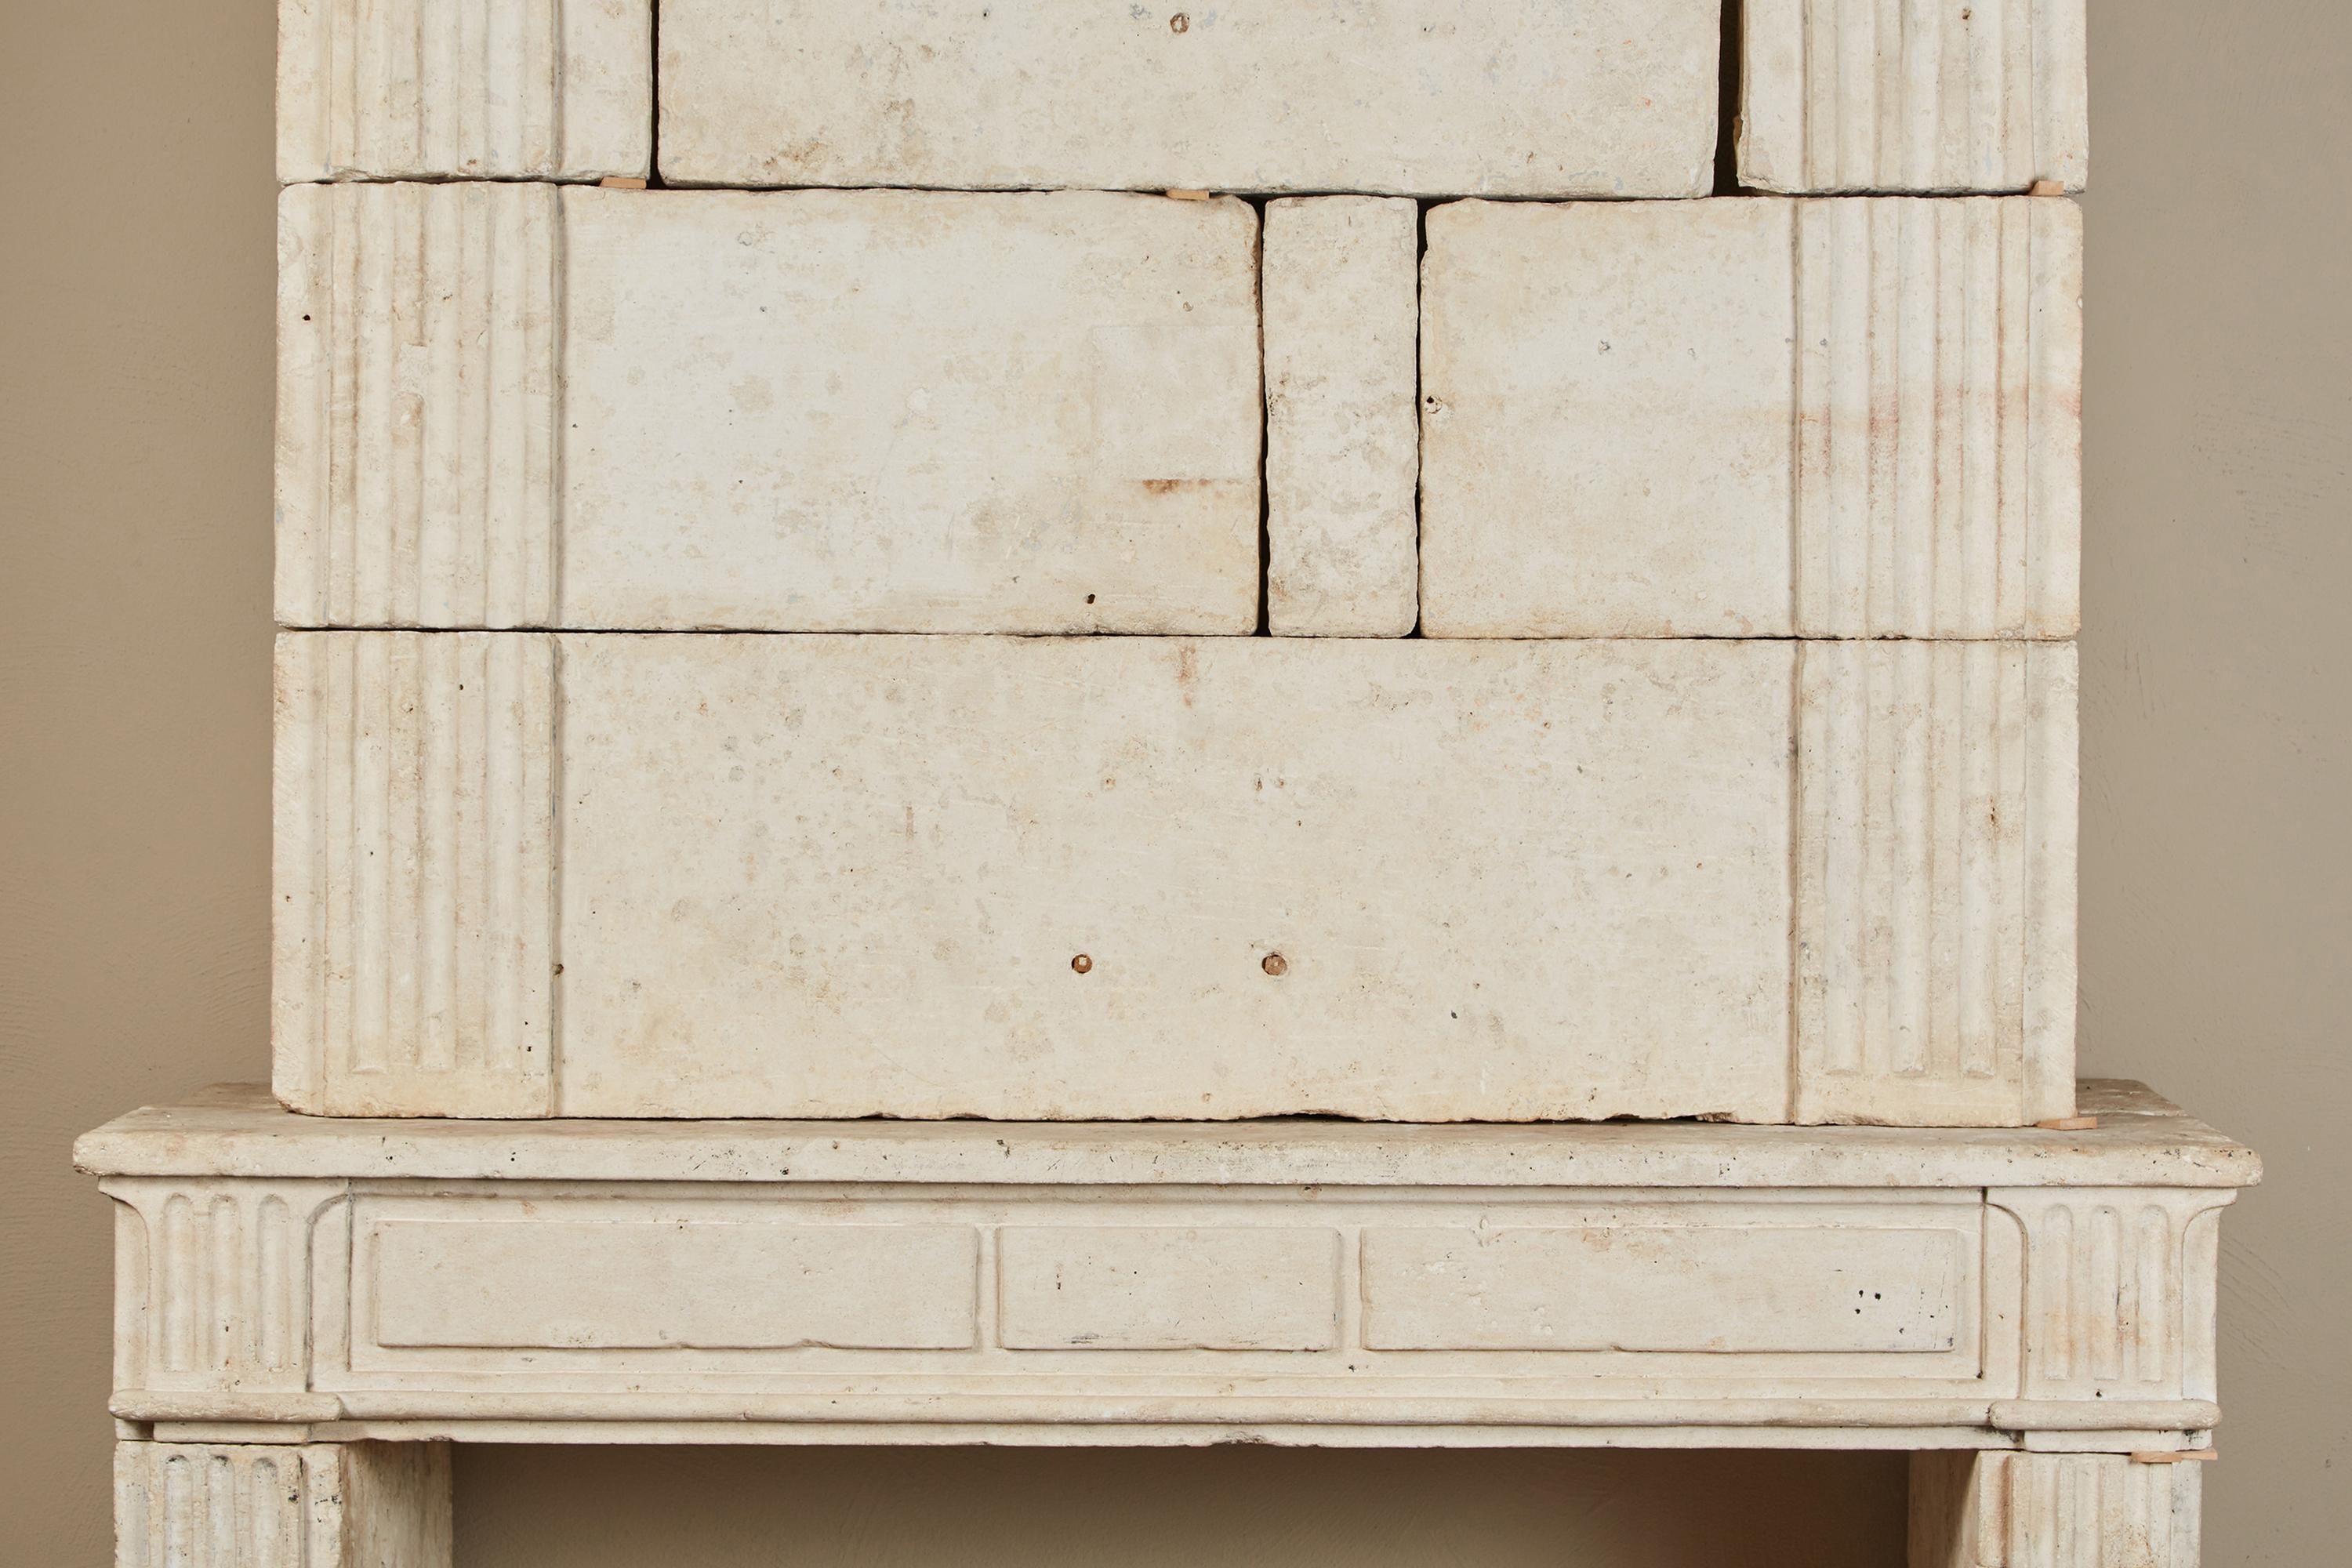 Eine Kamineinfassung aus französischem Kalkstein aus dem 18. Jahrhundert im neoklassischen Stil. Der obere Teil ist von beeindruckender Größe, mit einem breiten, profilierten Gesims und breiten, kannelierten Pilastern. Der untere Teil ist mit